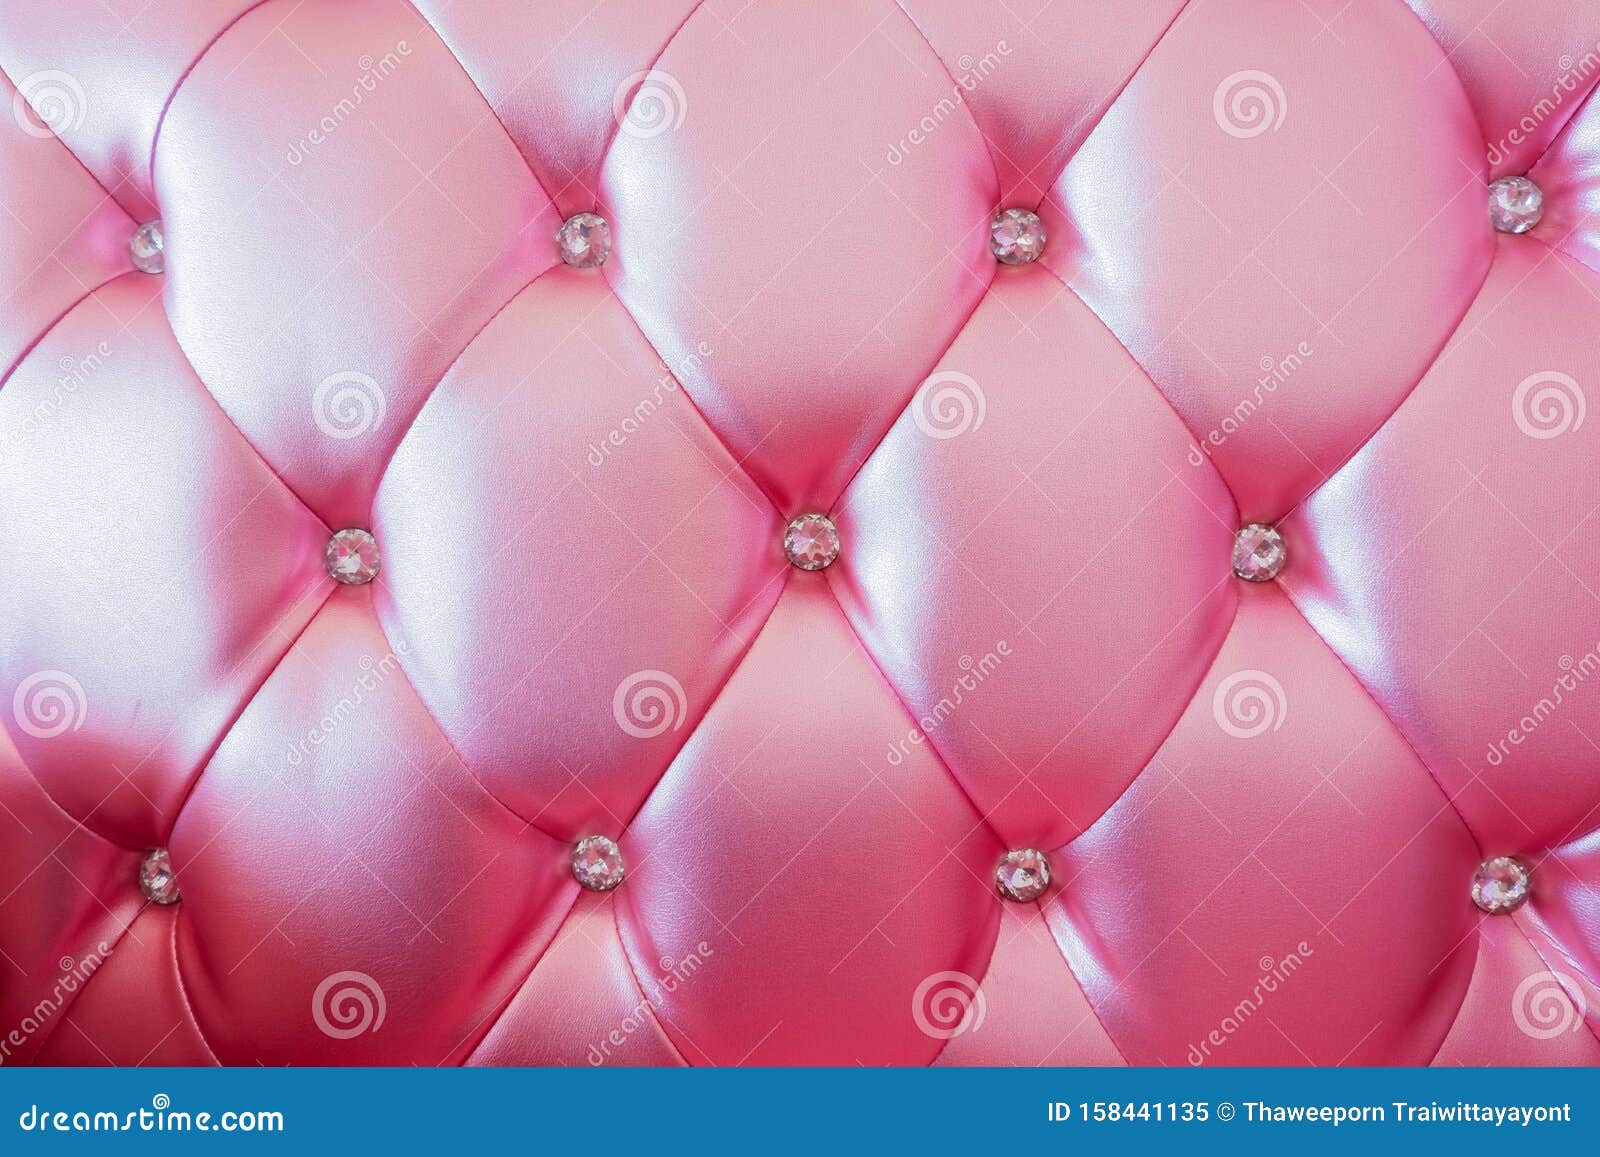 Cảm nhận mãn nhãn với hình ảnh về dày da cá sấu hoa hồng hổ phách, nền da hồng nổi bật với từng chi tiết hoa hồng hổ phách rực rỡ. Hình ảnh ấn tượng này chắc chắn sẽ làm bạn say mê và cảm thấy thích thú.